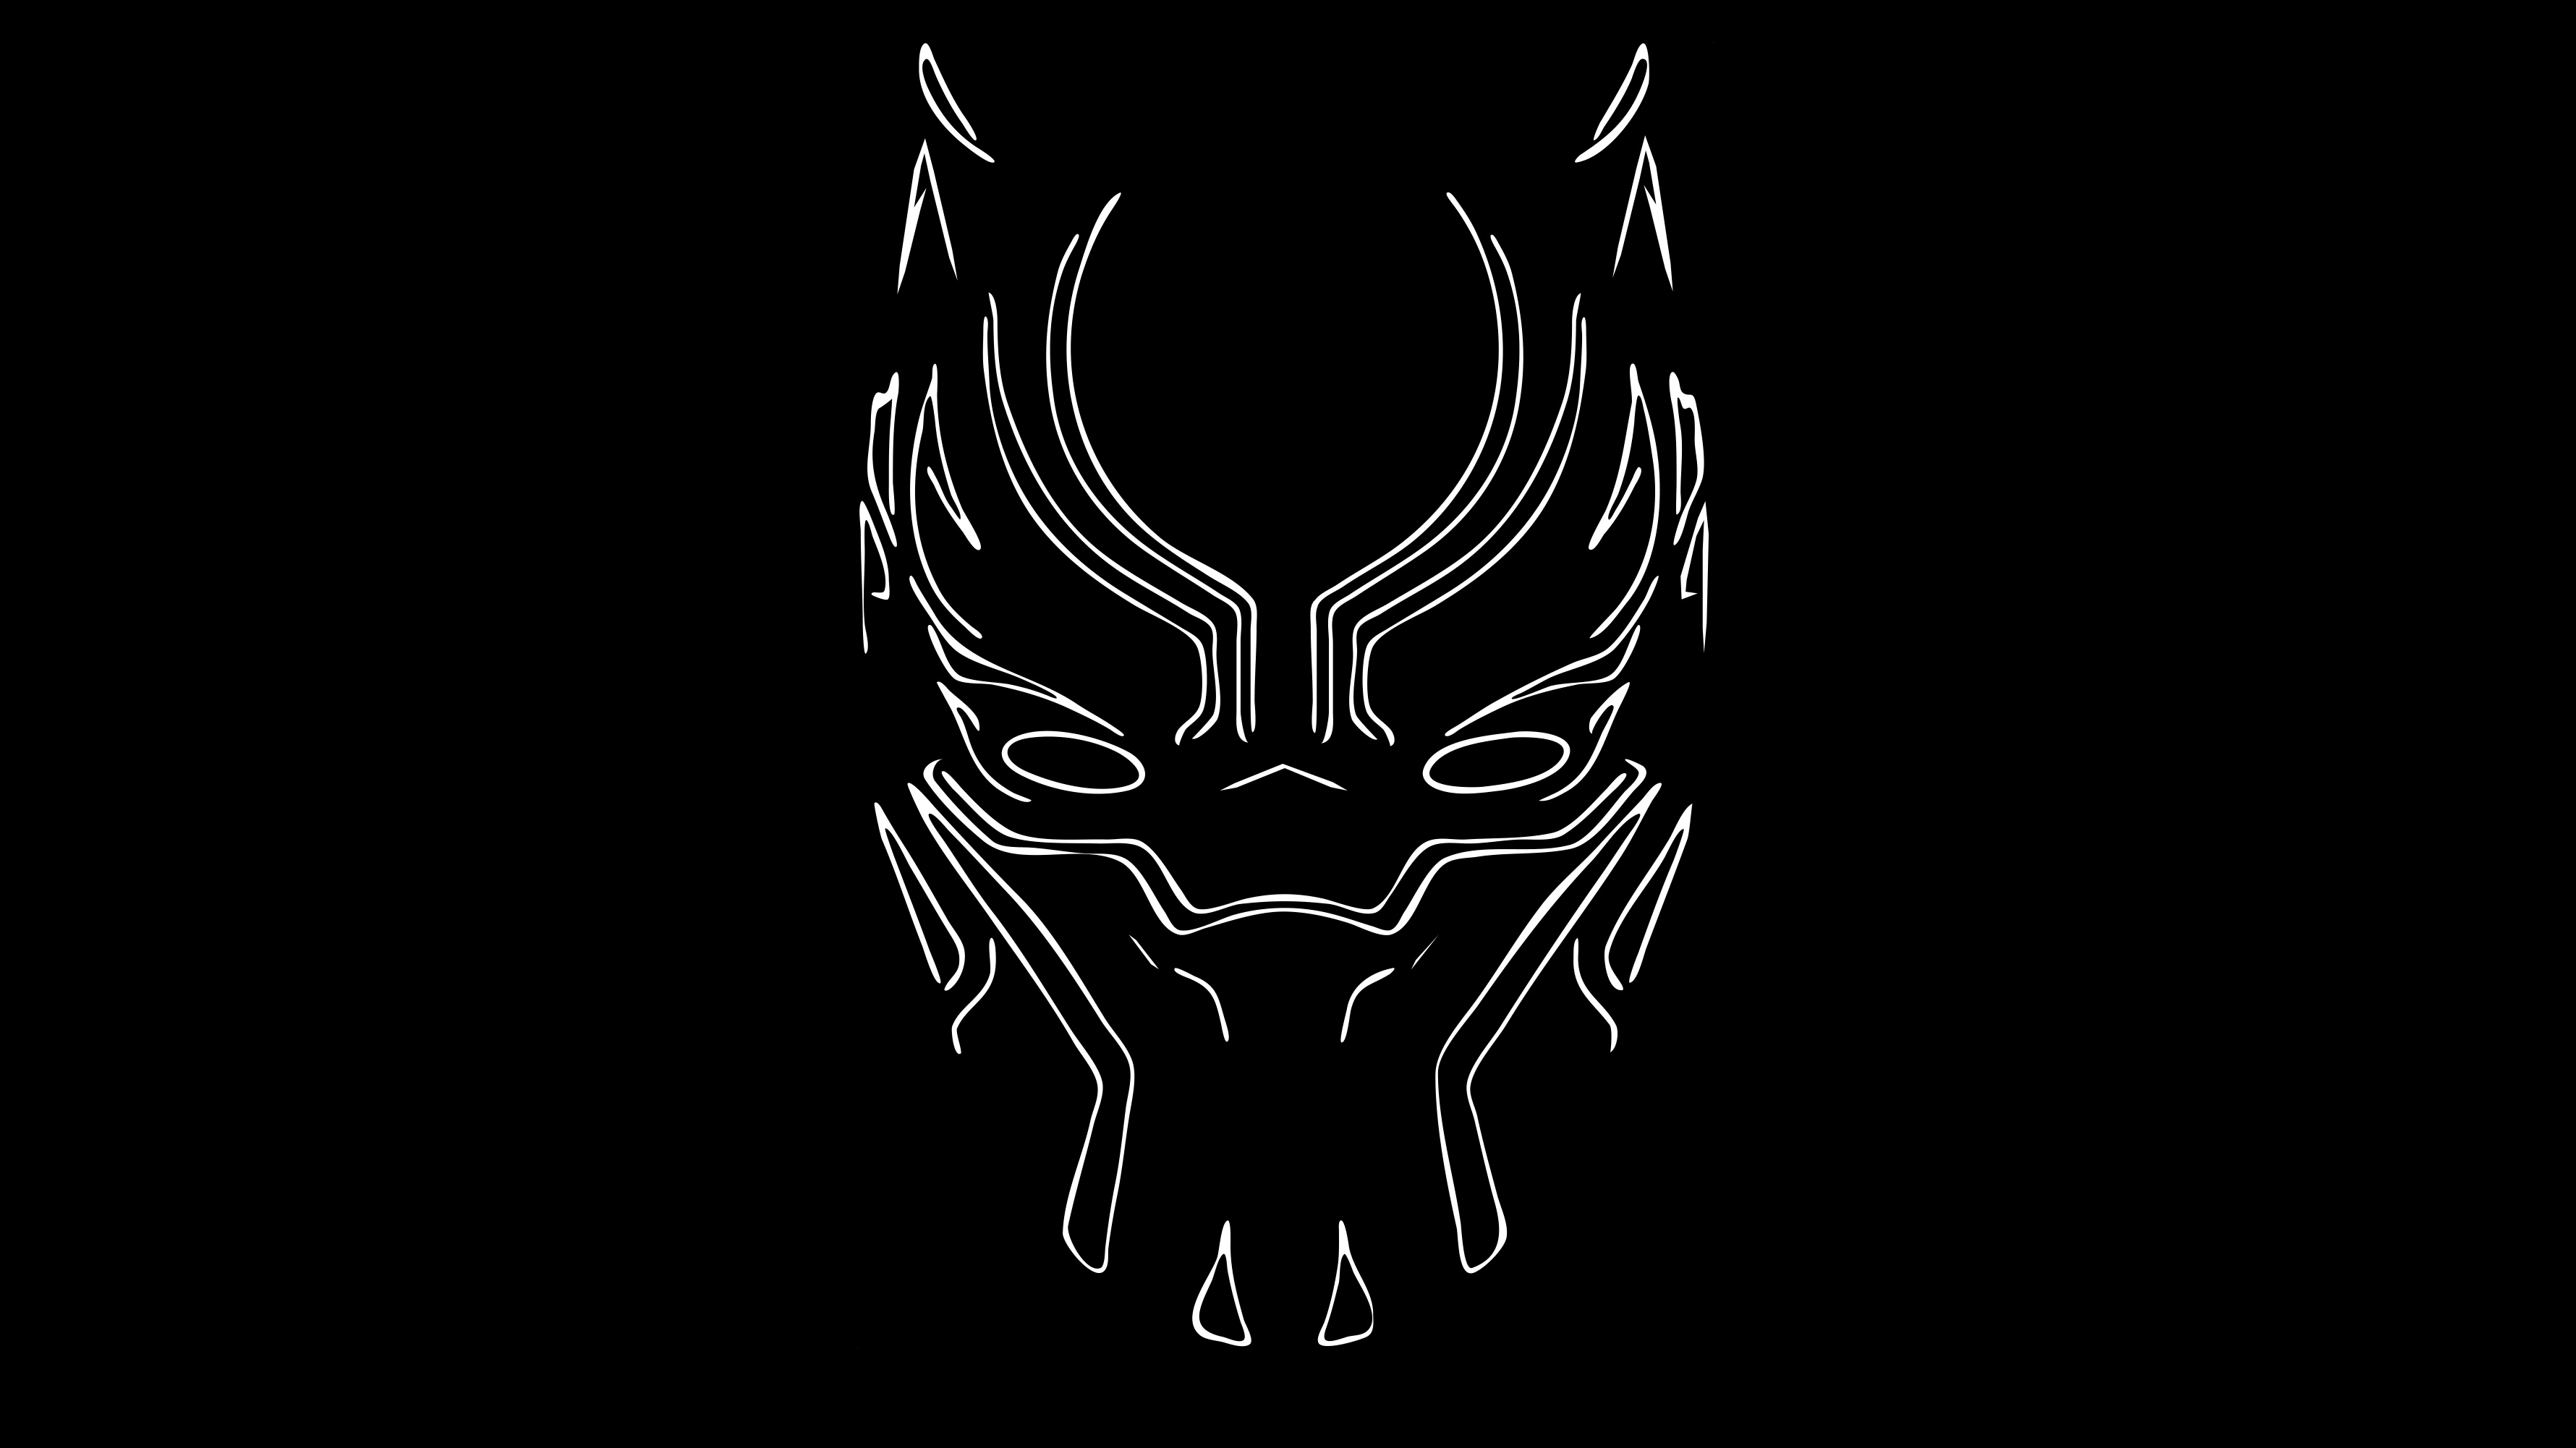 Black Panther Mask